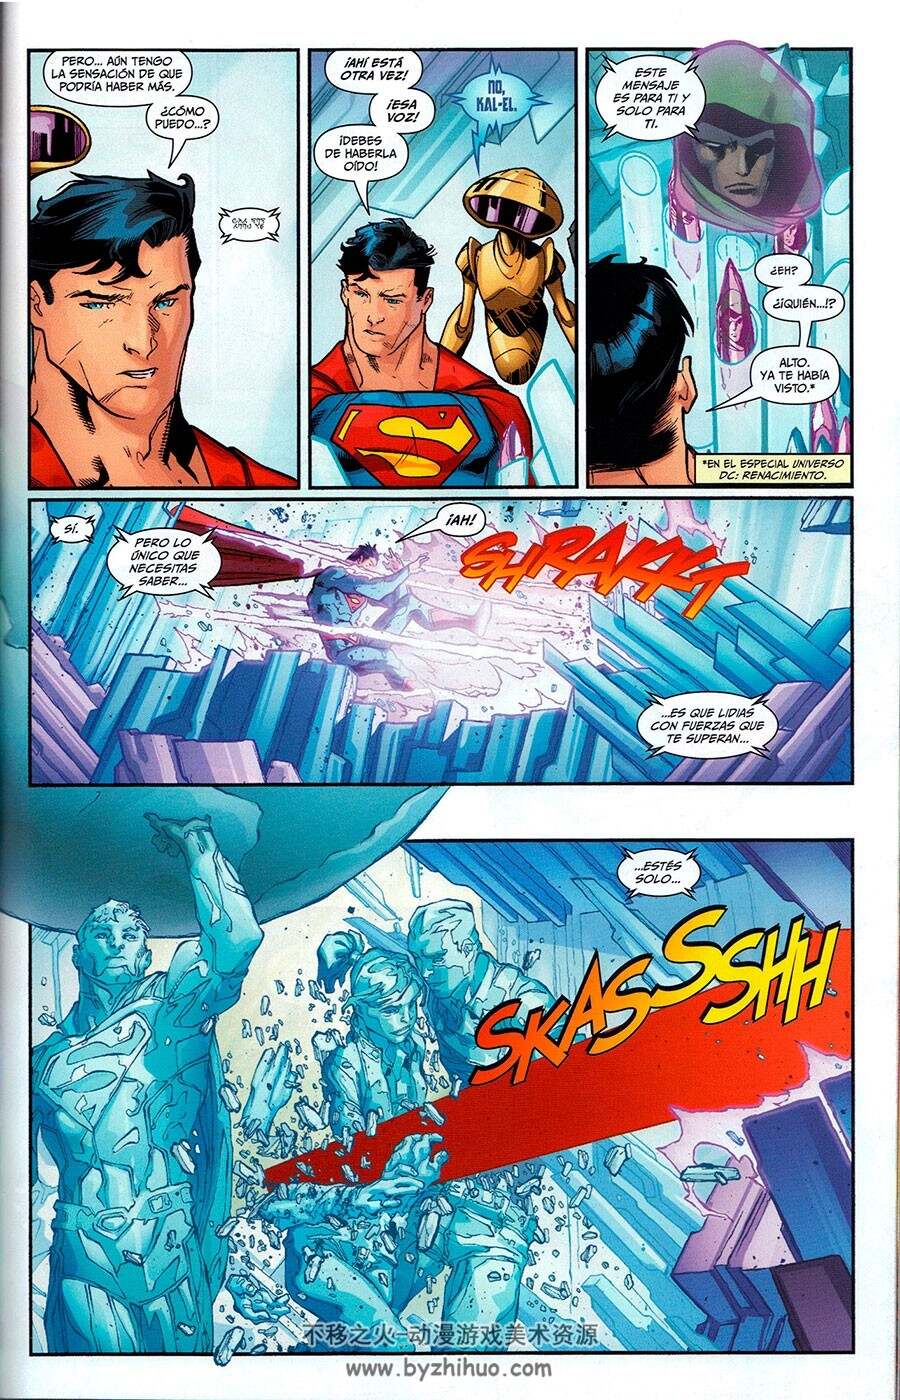 Superman Action Comics 1-8册 美国DC漫画旗下超级英雄漫画下载